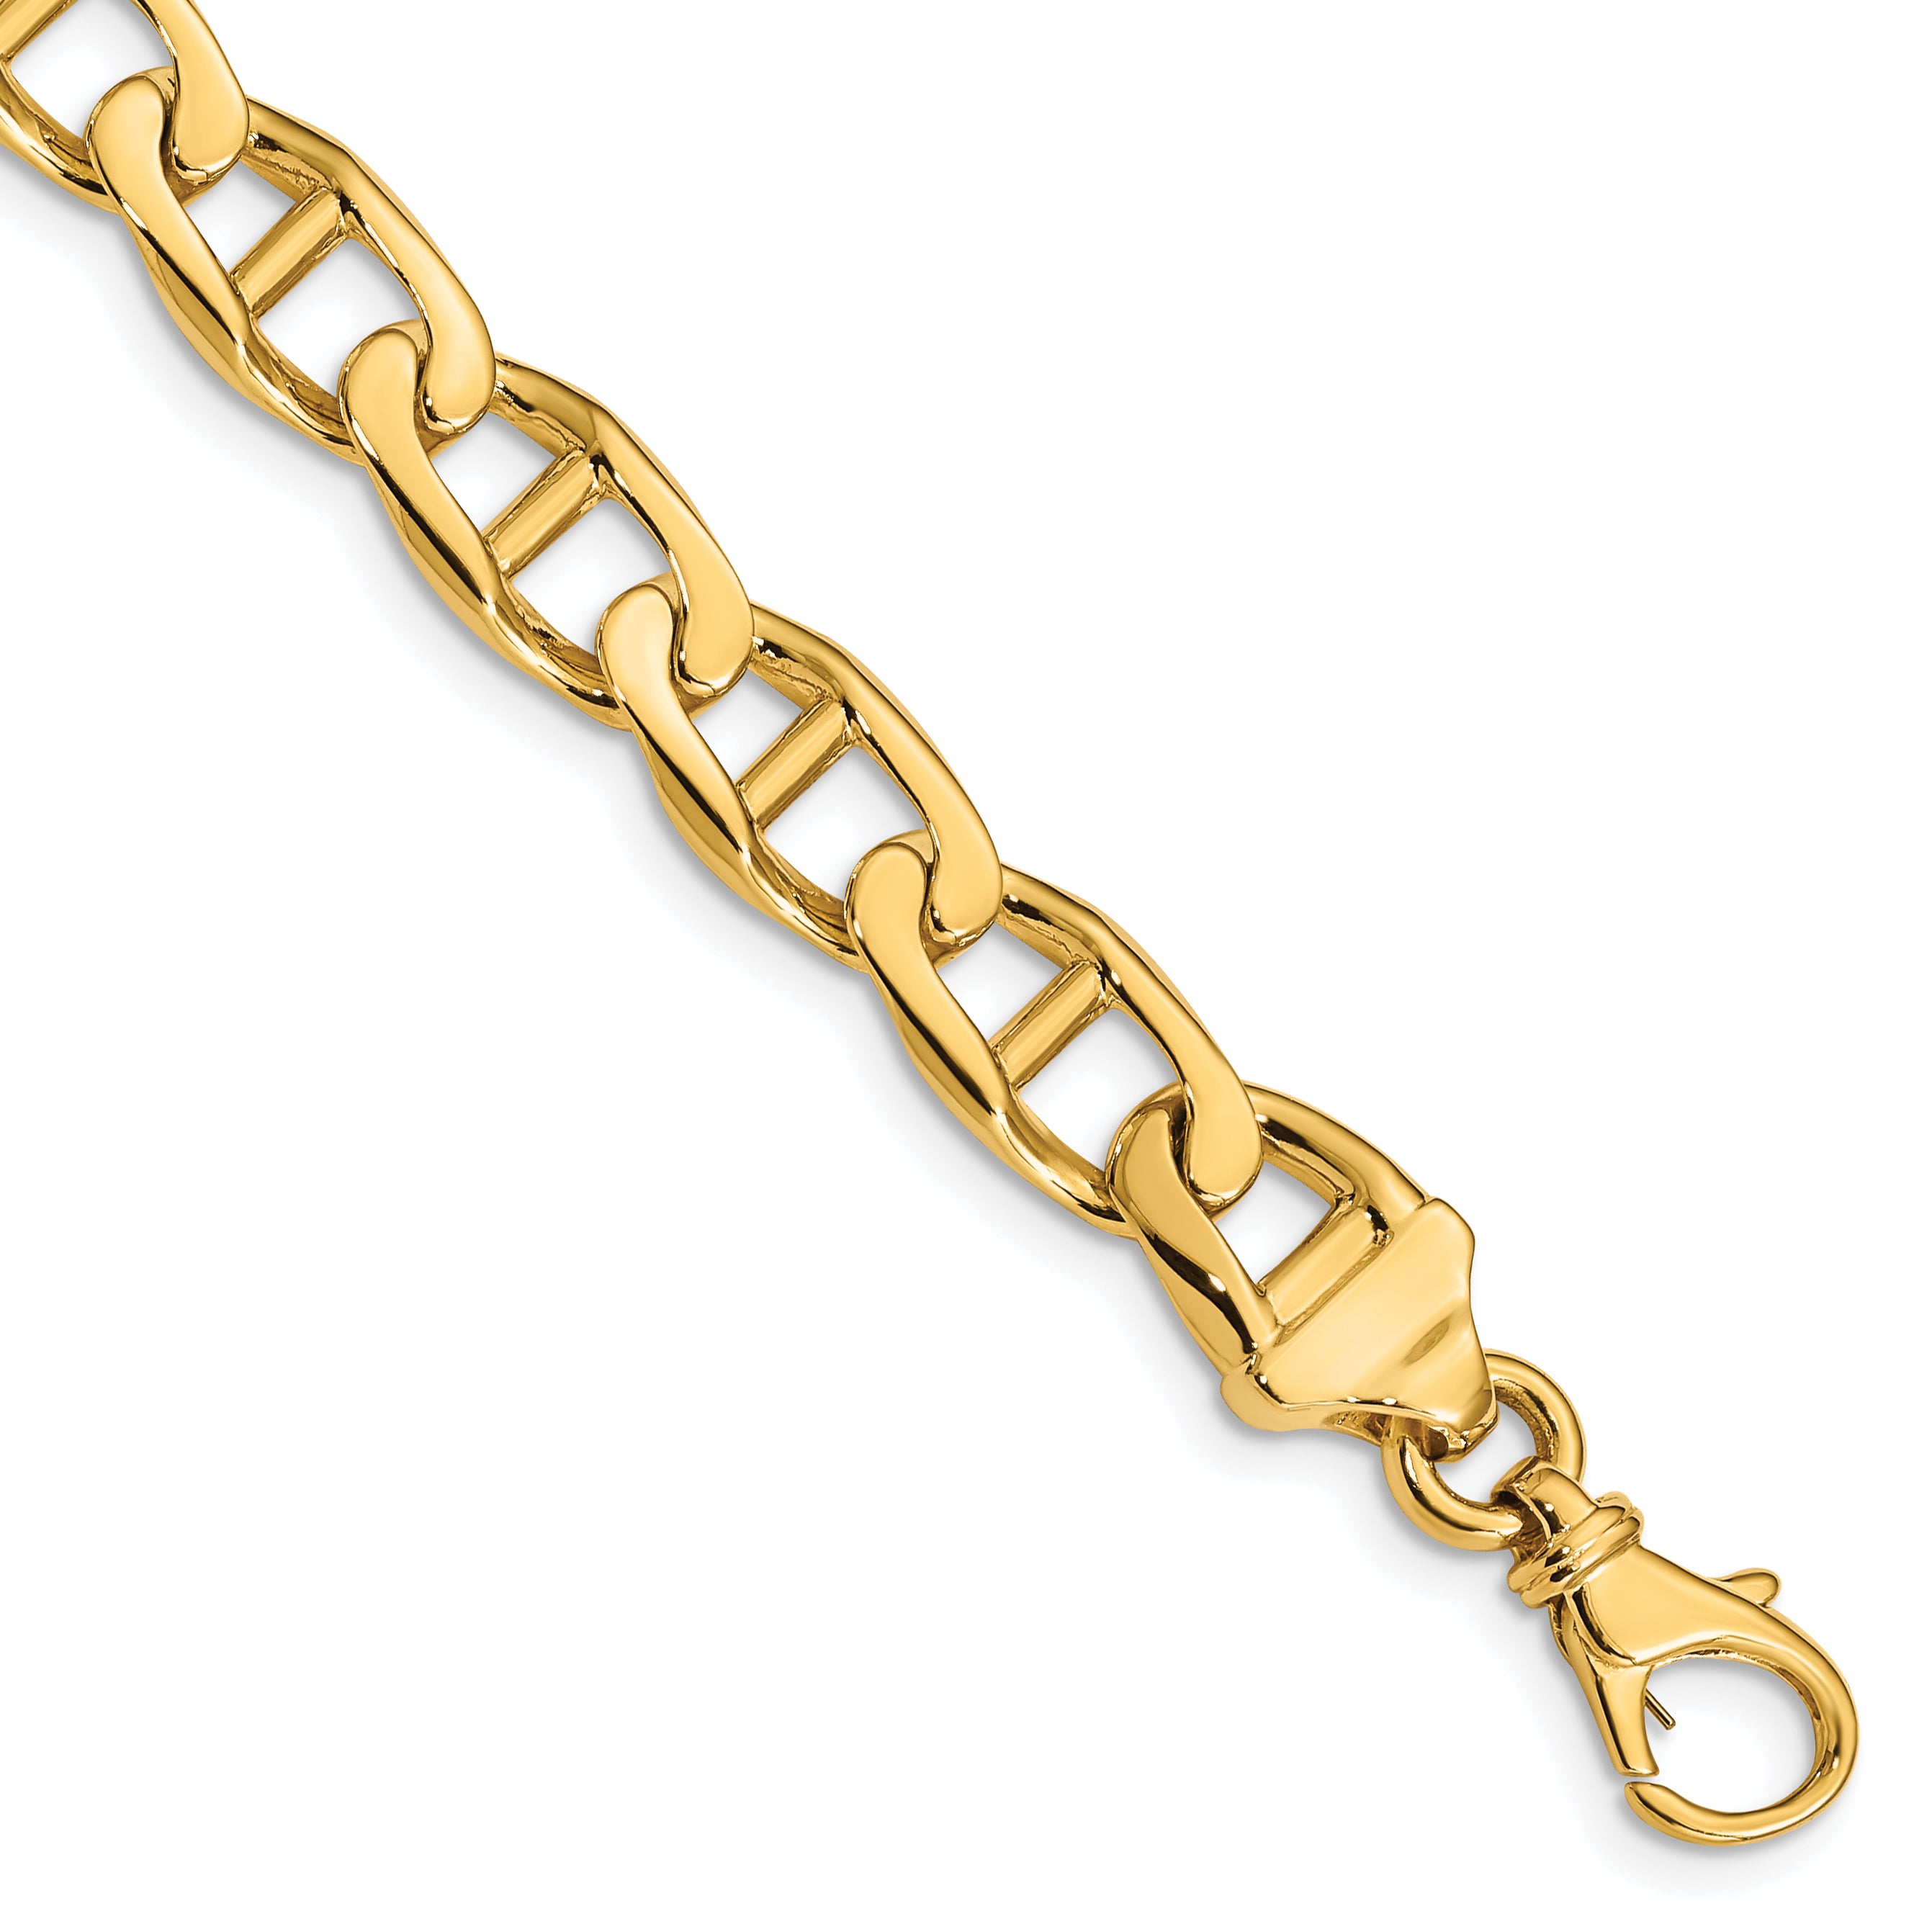 10k 8.5mm Hand-Polished Anchor Link Bracelet